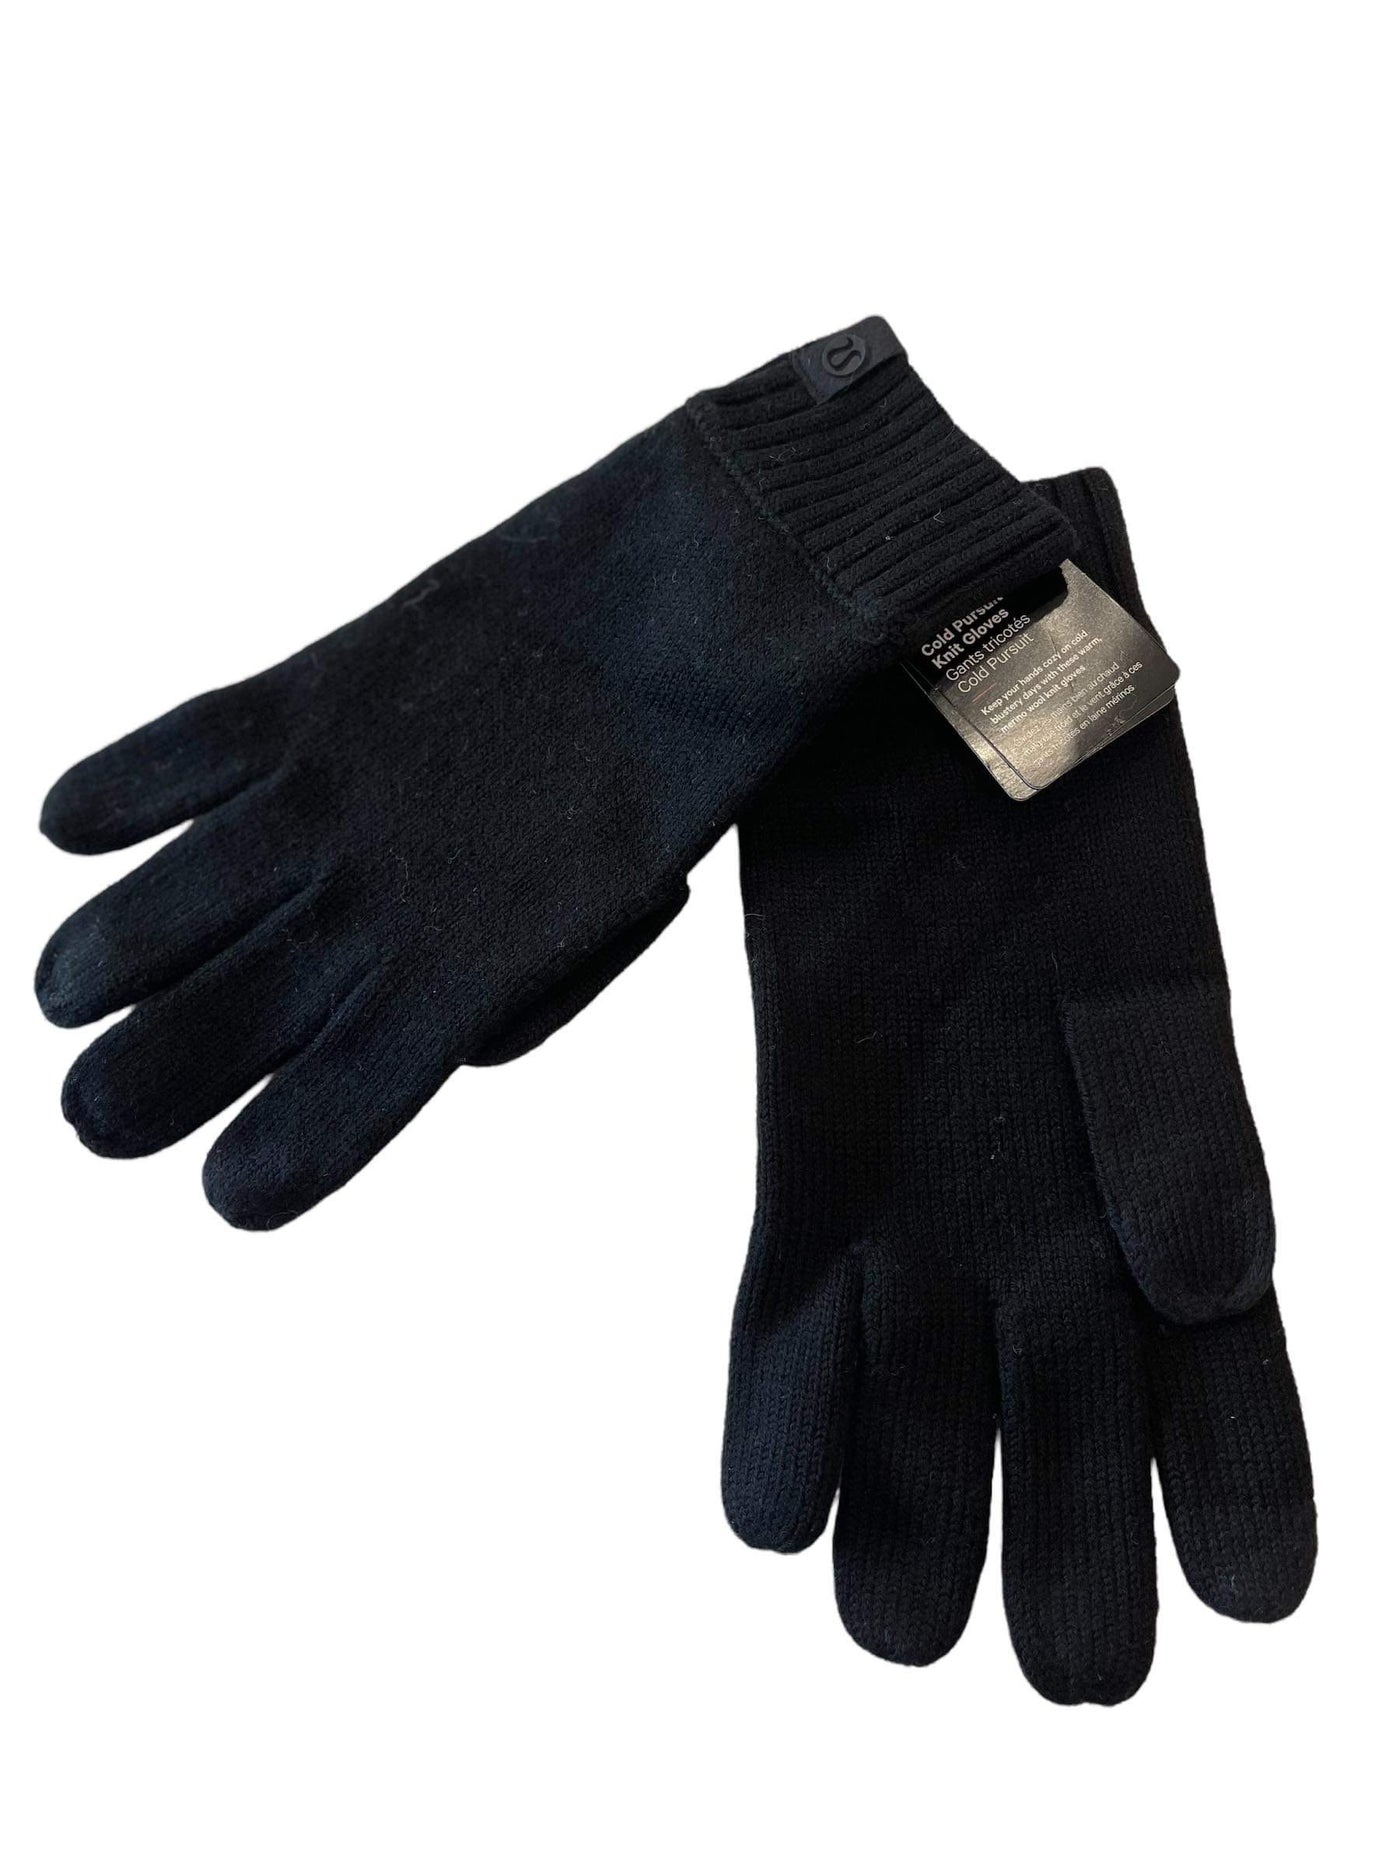 Cold Pursuit Knit Gloves | Tech